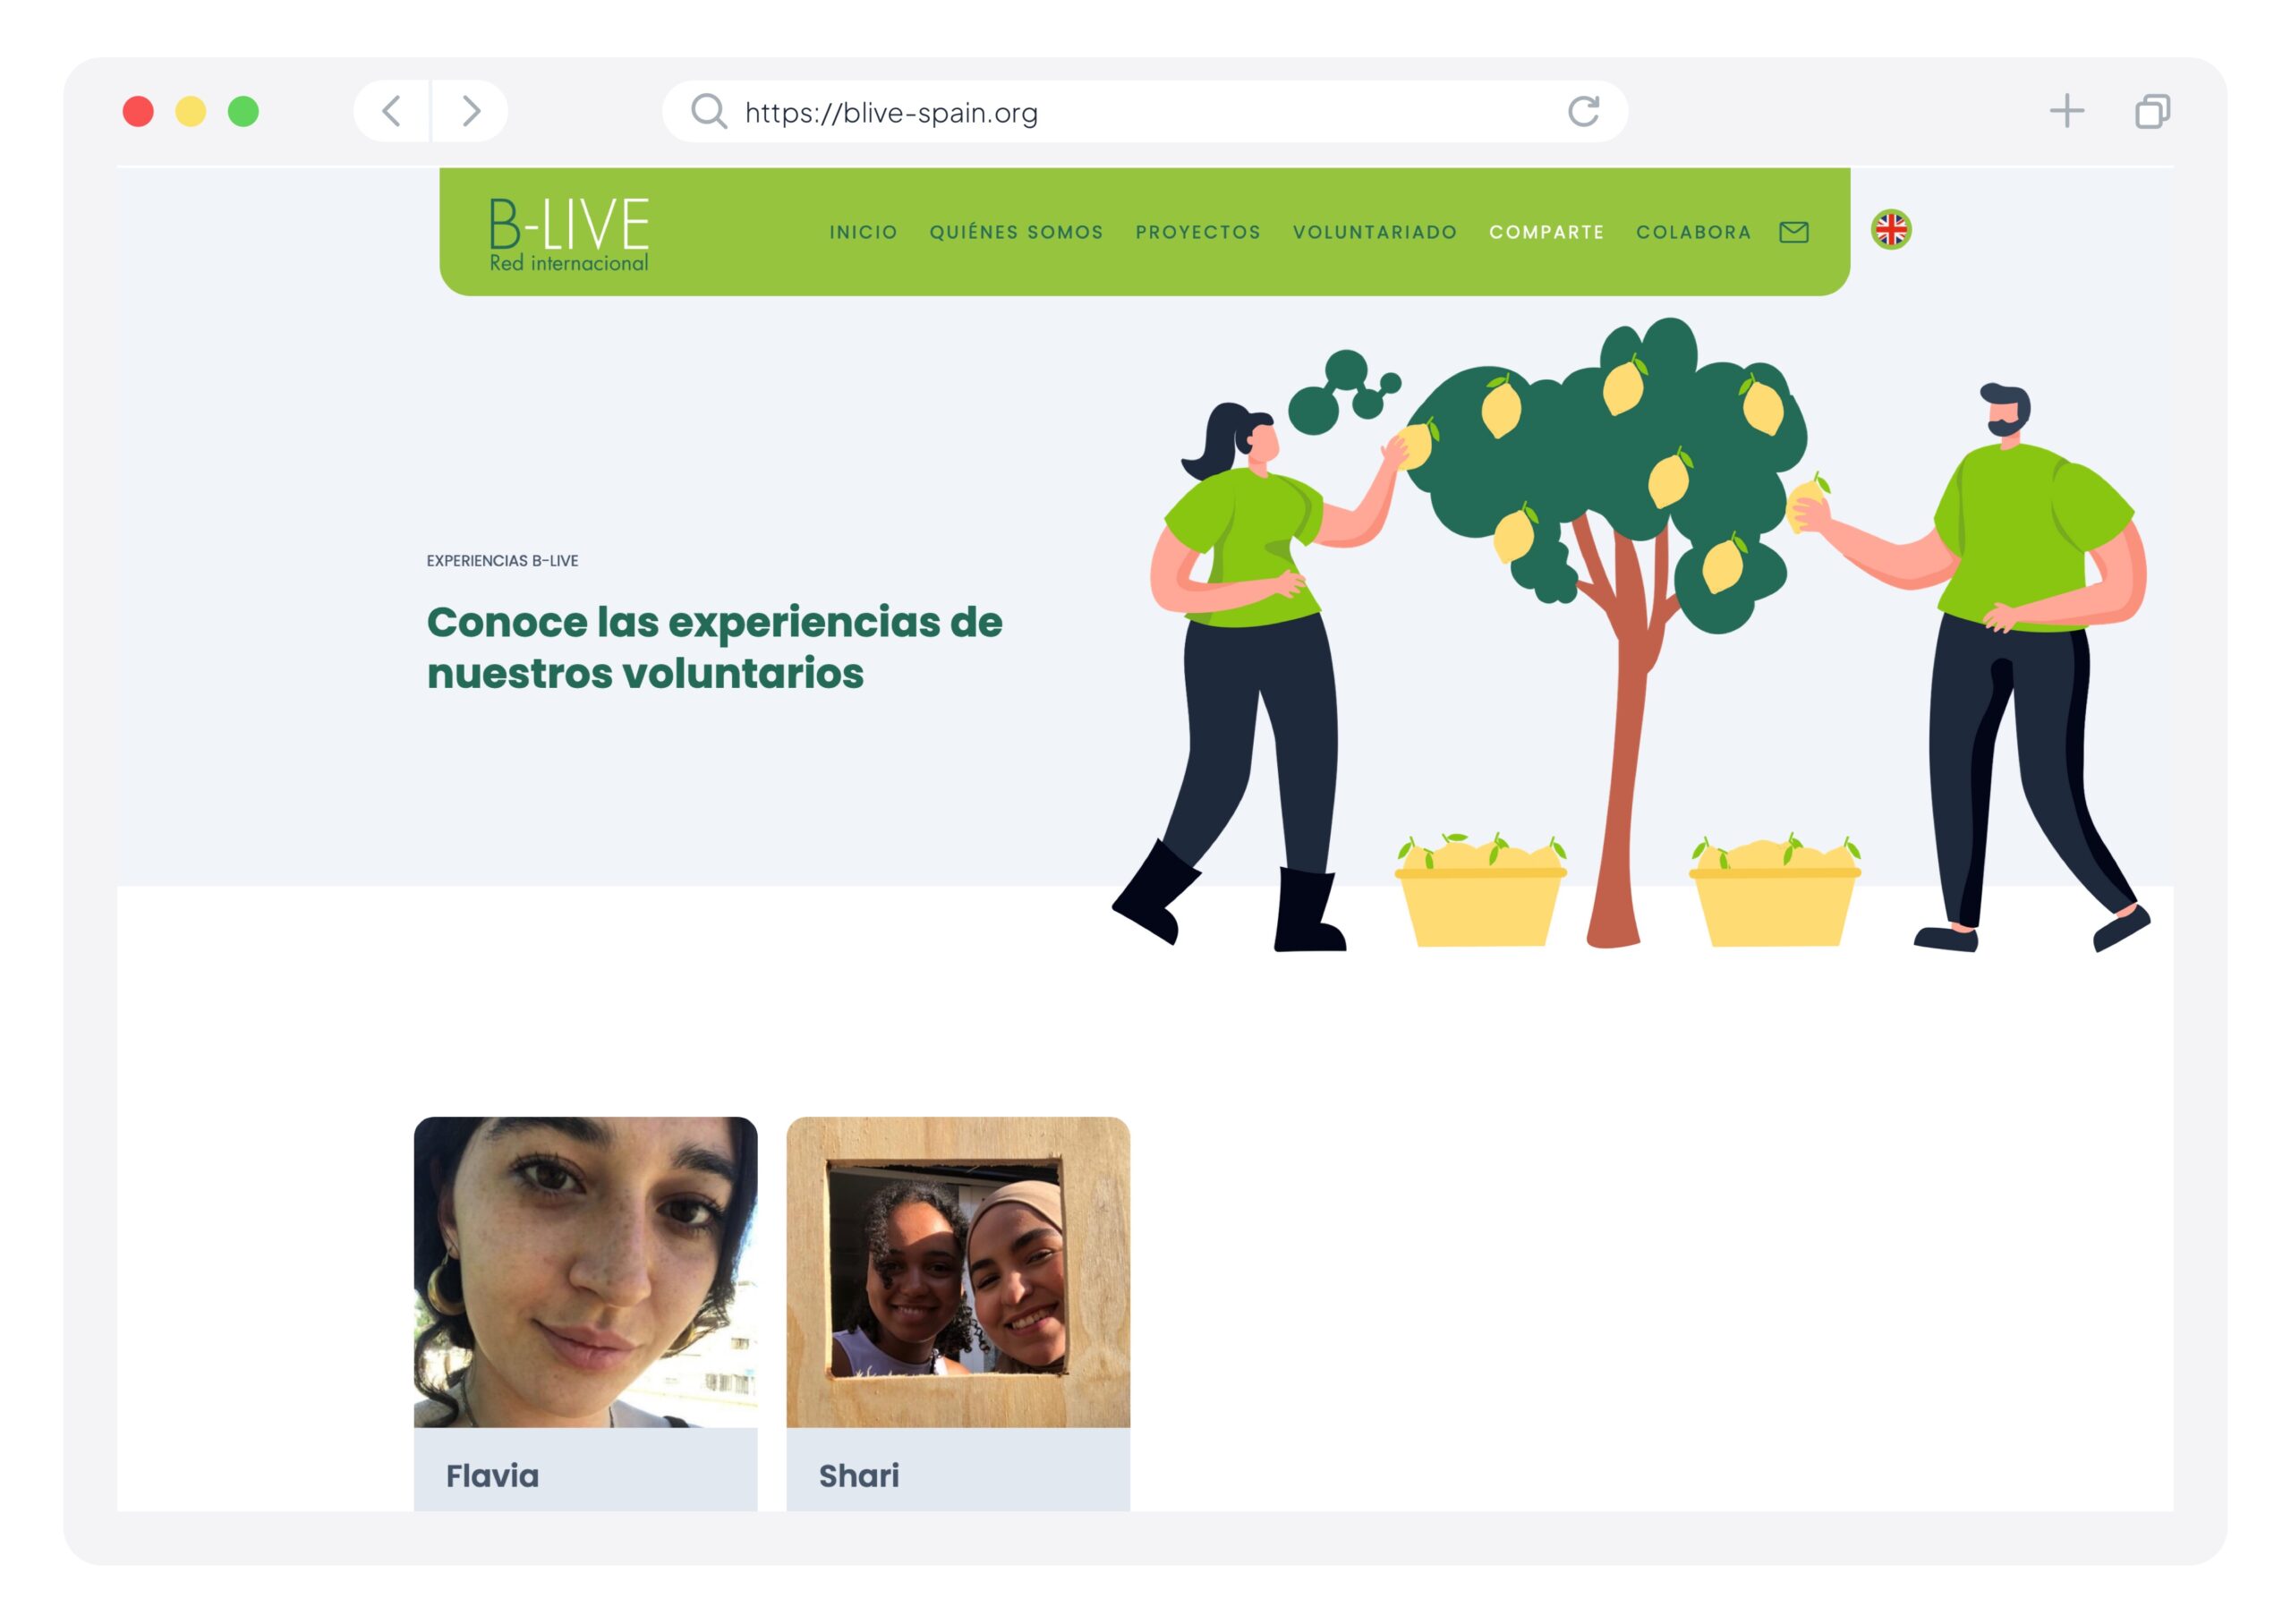 Diseño y desarrollo de página web en Wordpress para la ONG BLive Spain, un trabajo de Silvia Calavera